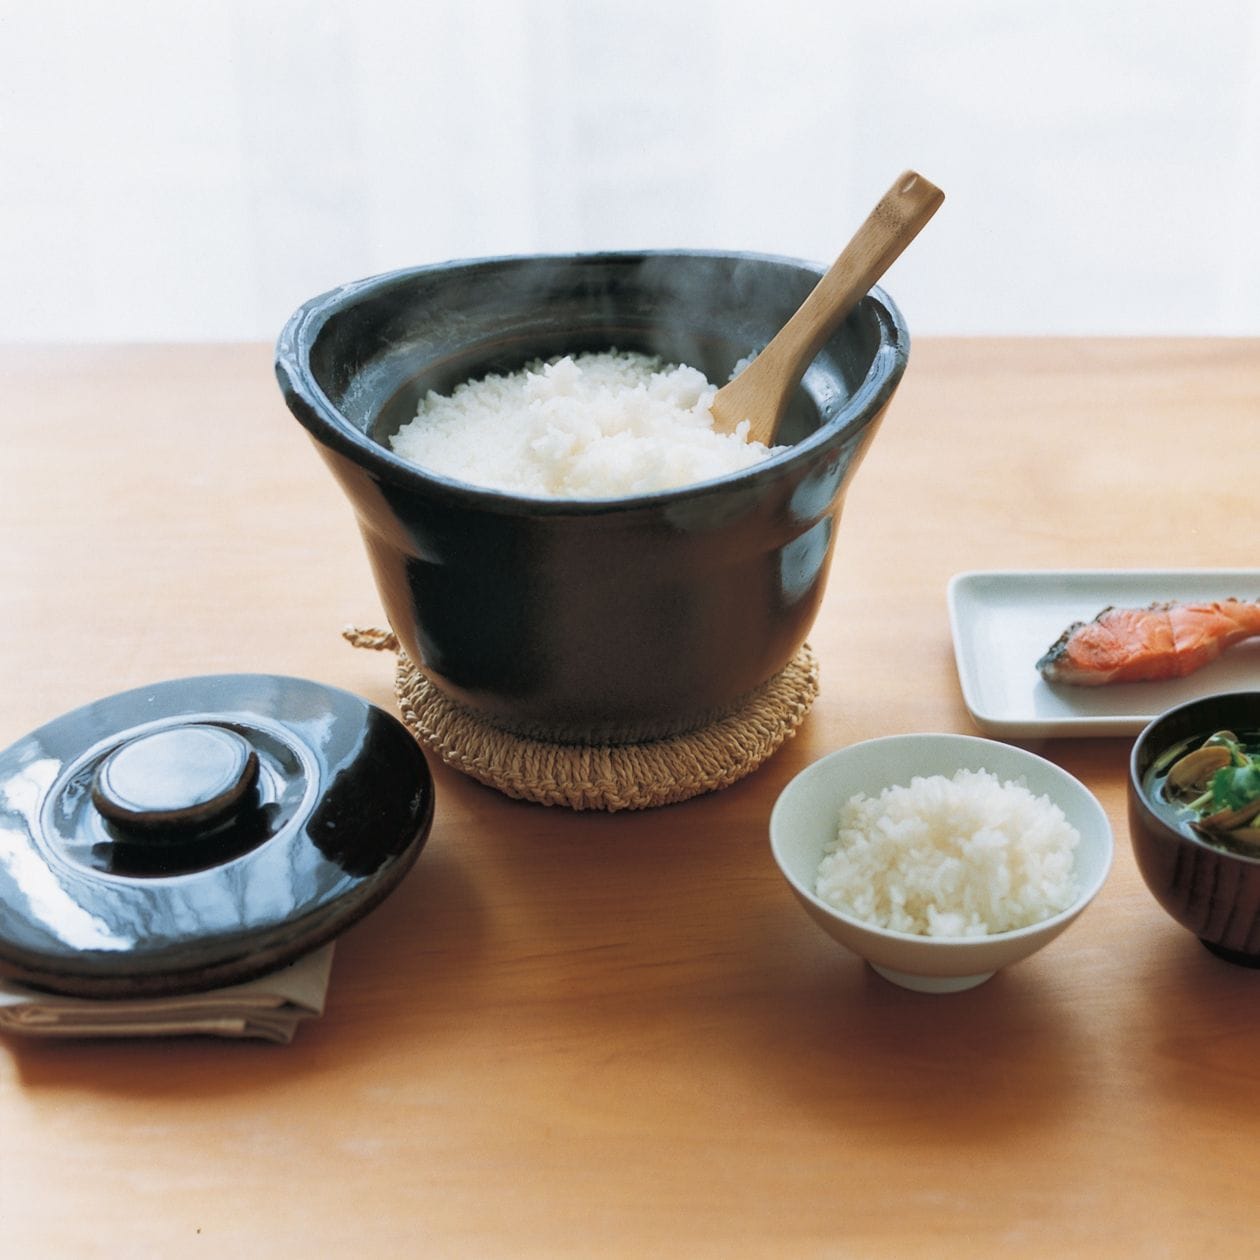 ●「土釜おこげ」で、毎日美味しいお米を食べれば毎日幸せ